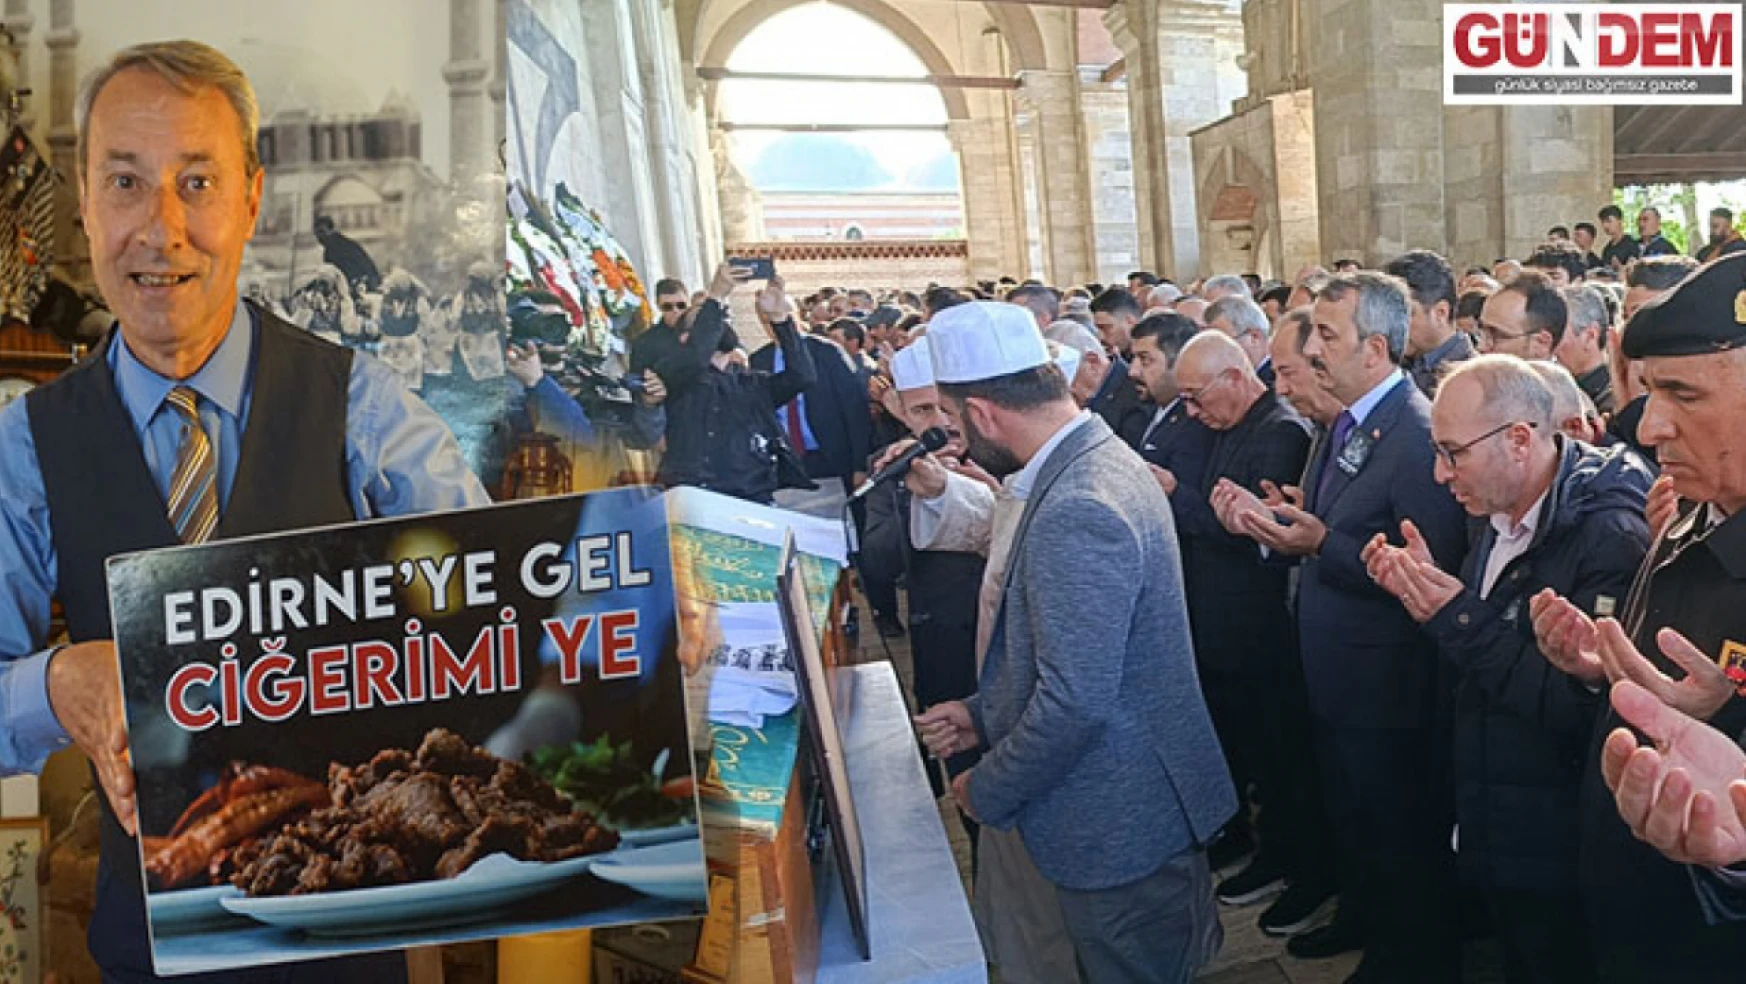 Edirne'nin turizm elçisi son yolculuğuna uğurlandı